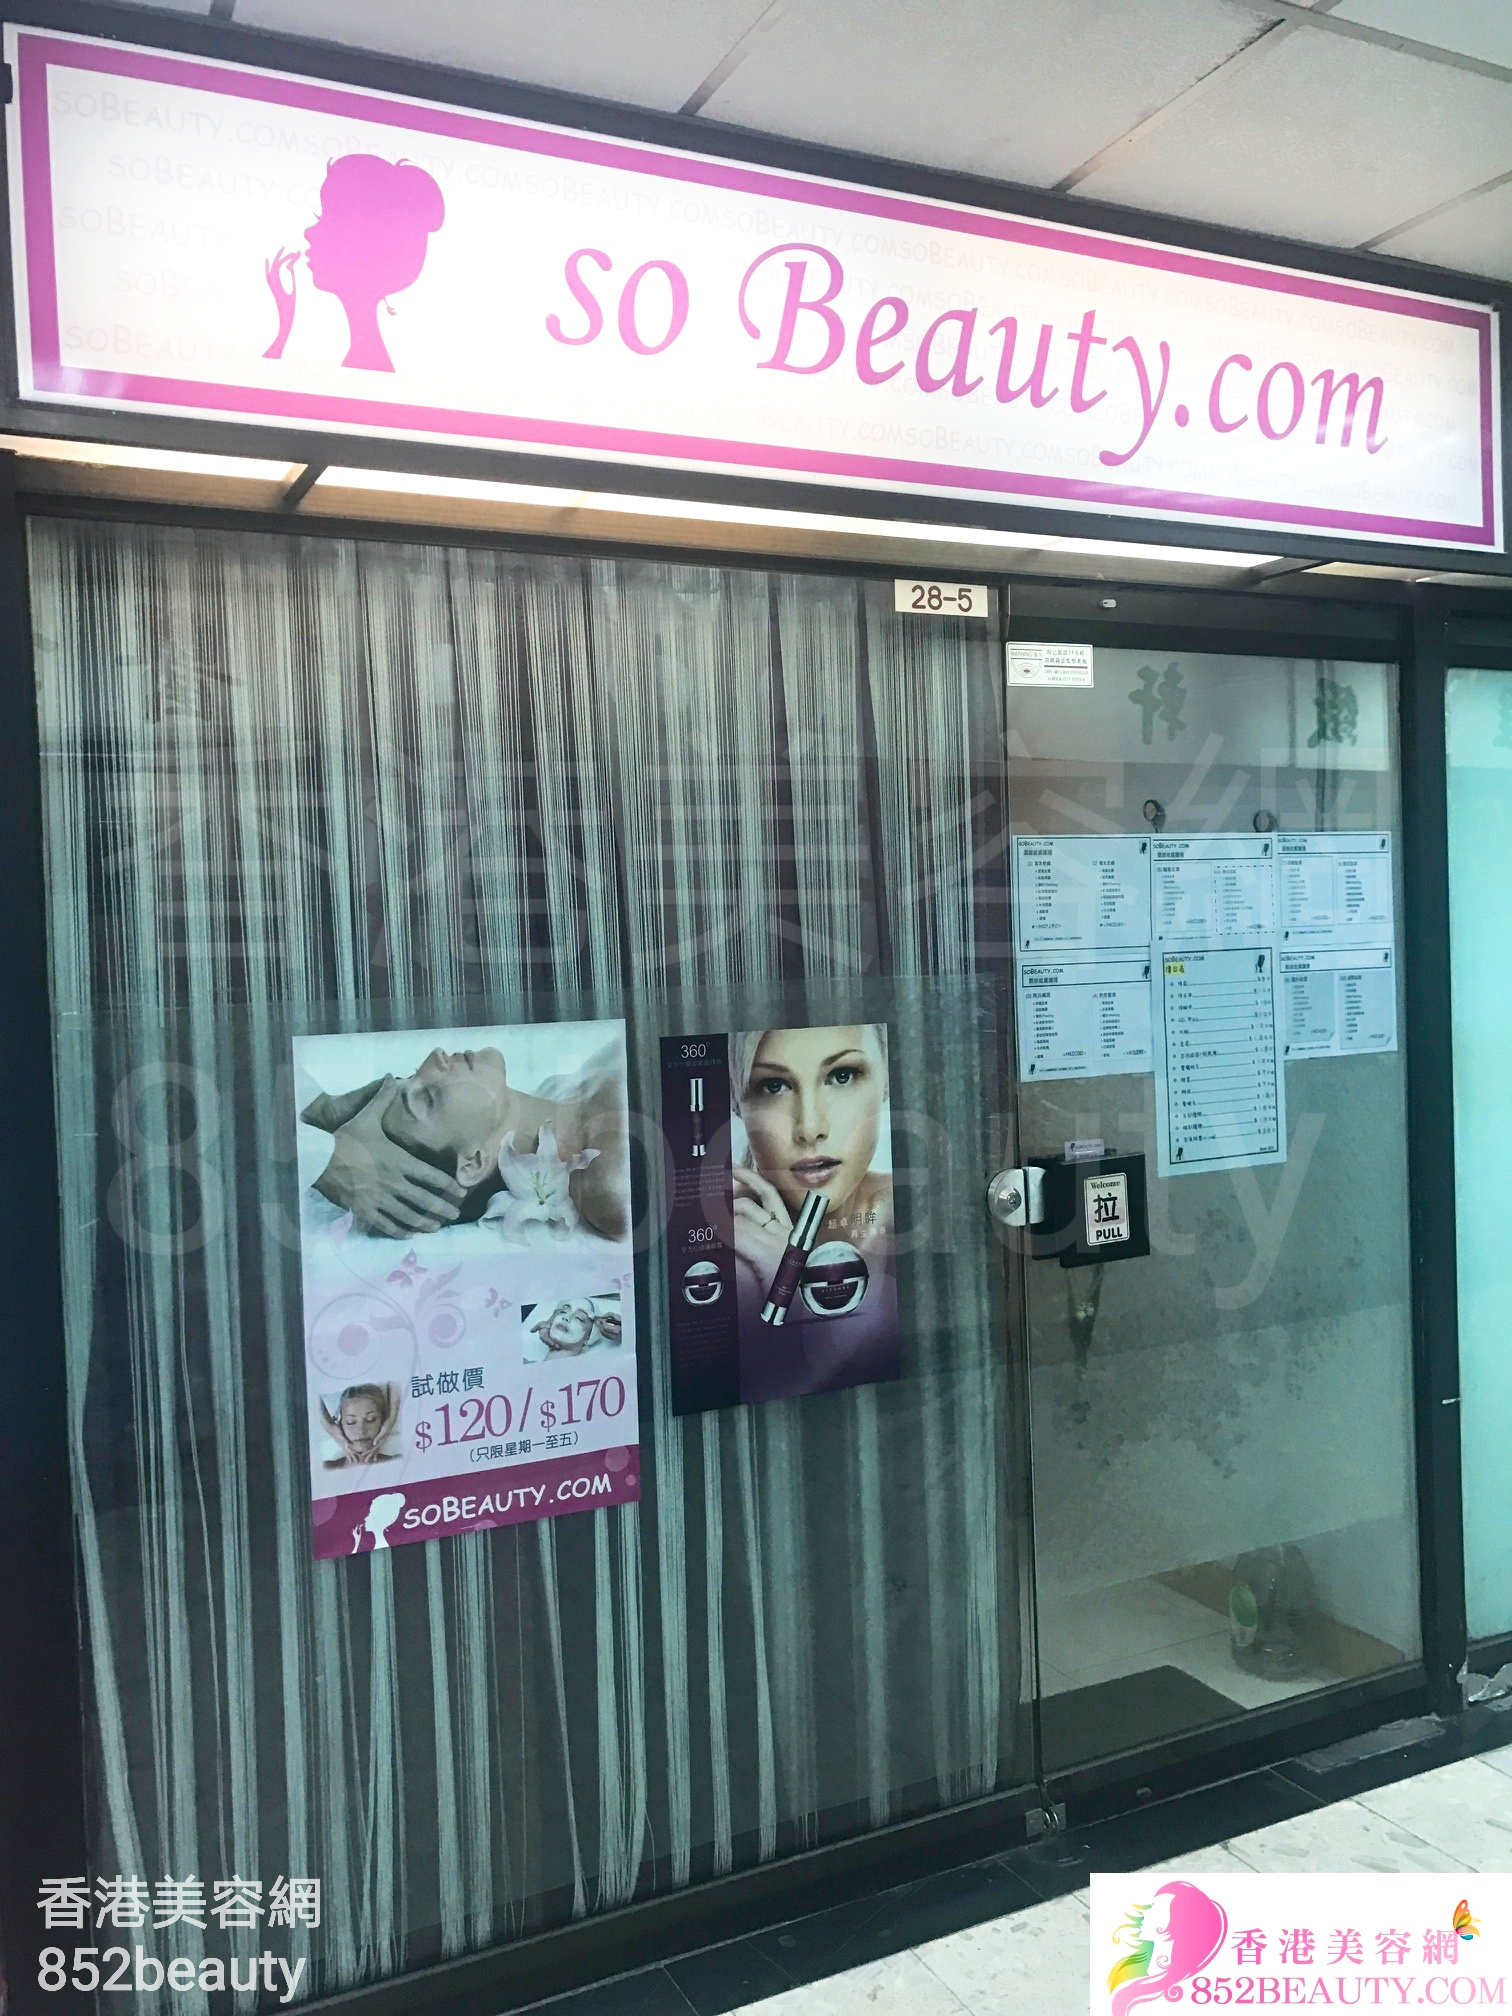 脫毛: so Beauty.com